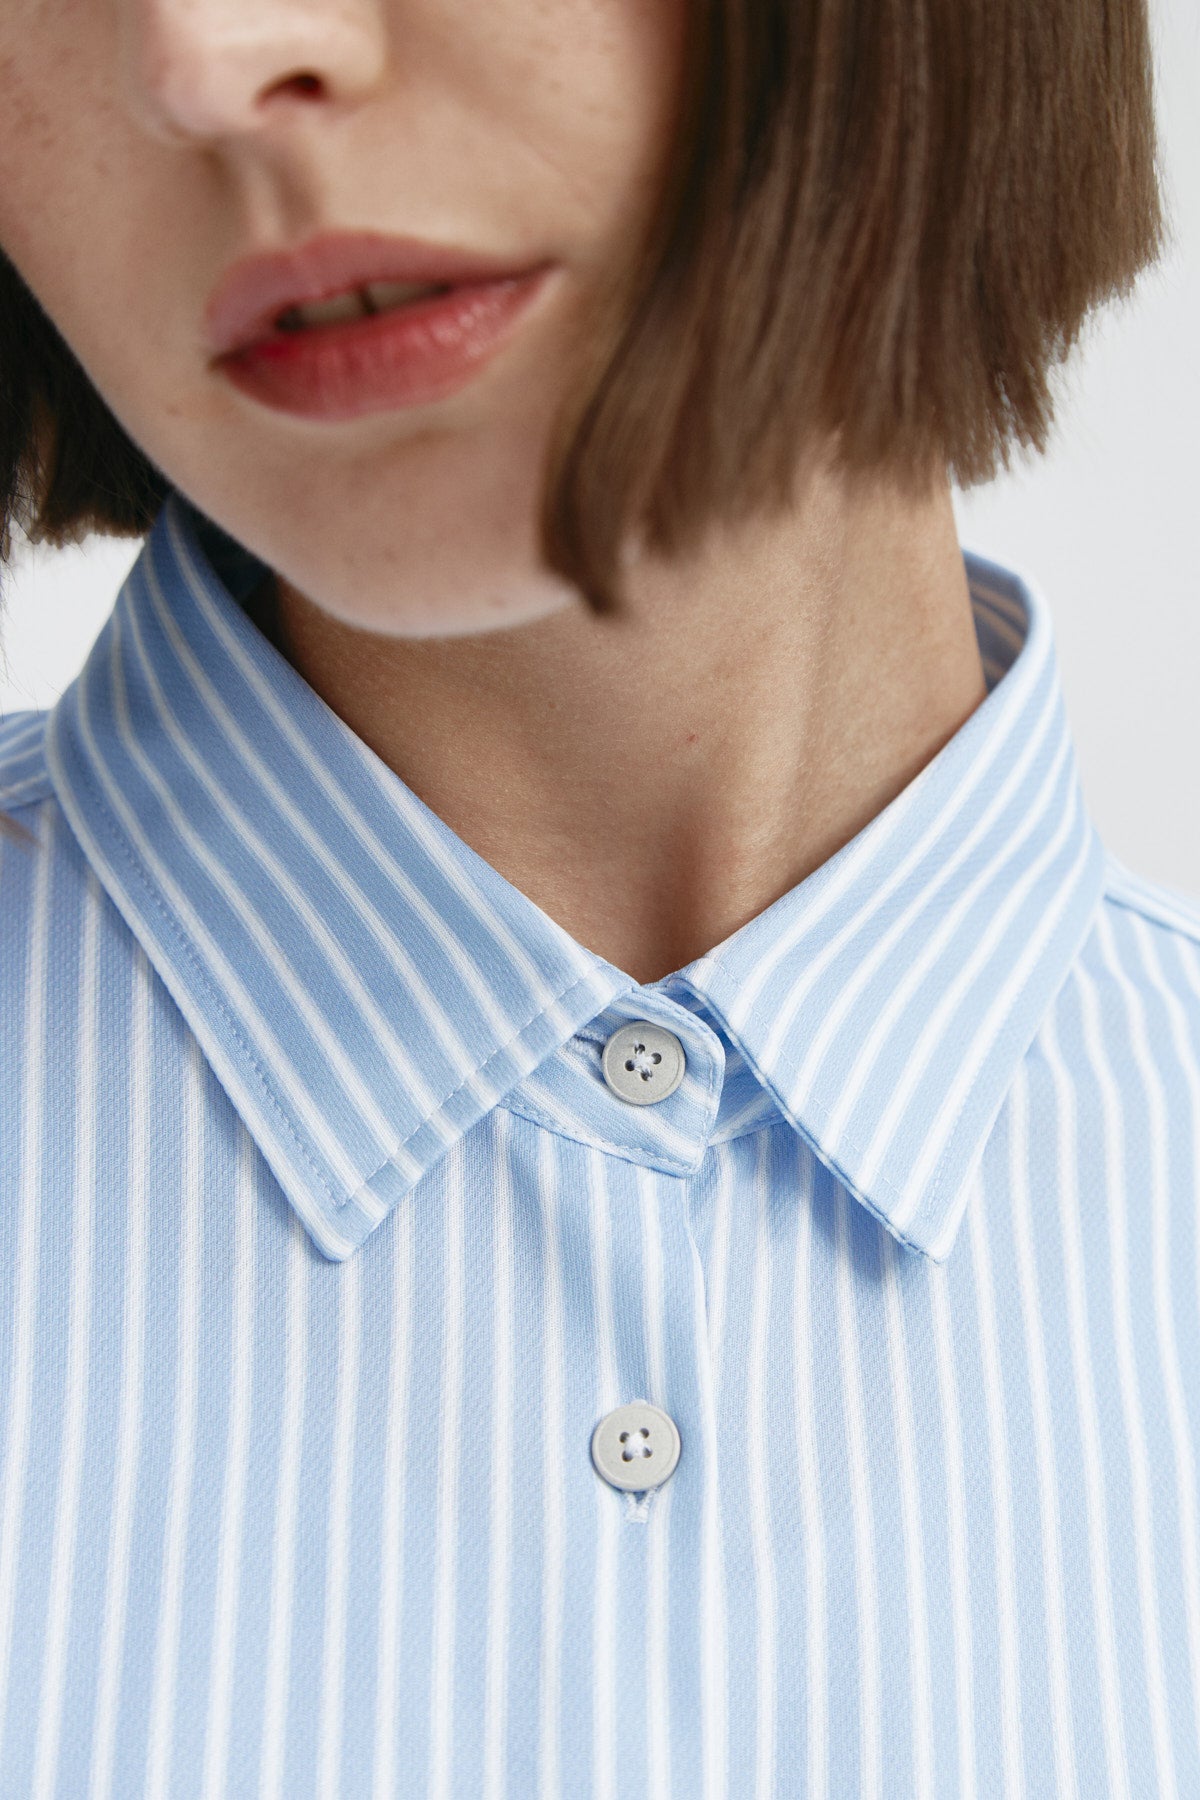 Camisa rayas azules oversize de Sepiia, elegante y resistente a manchas y arrugas. Foto retrato